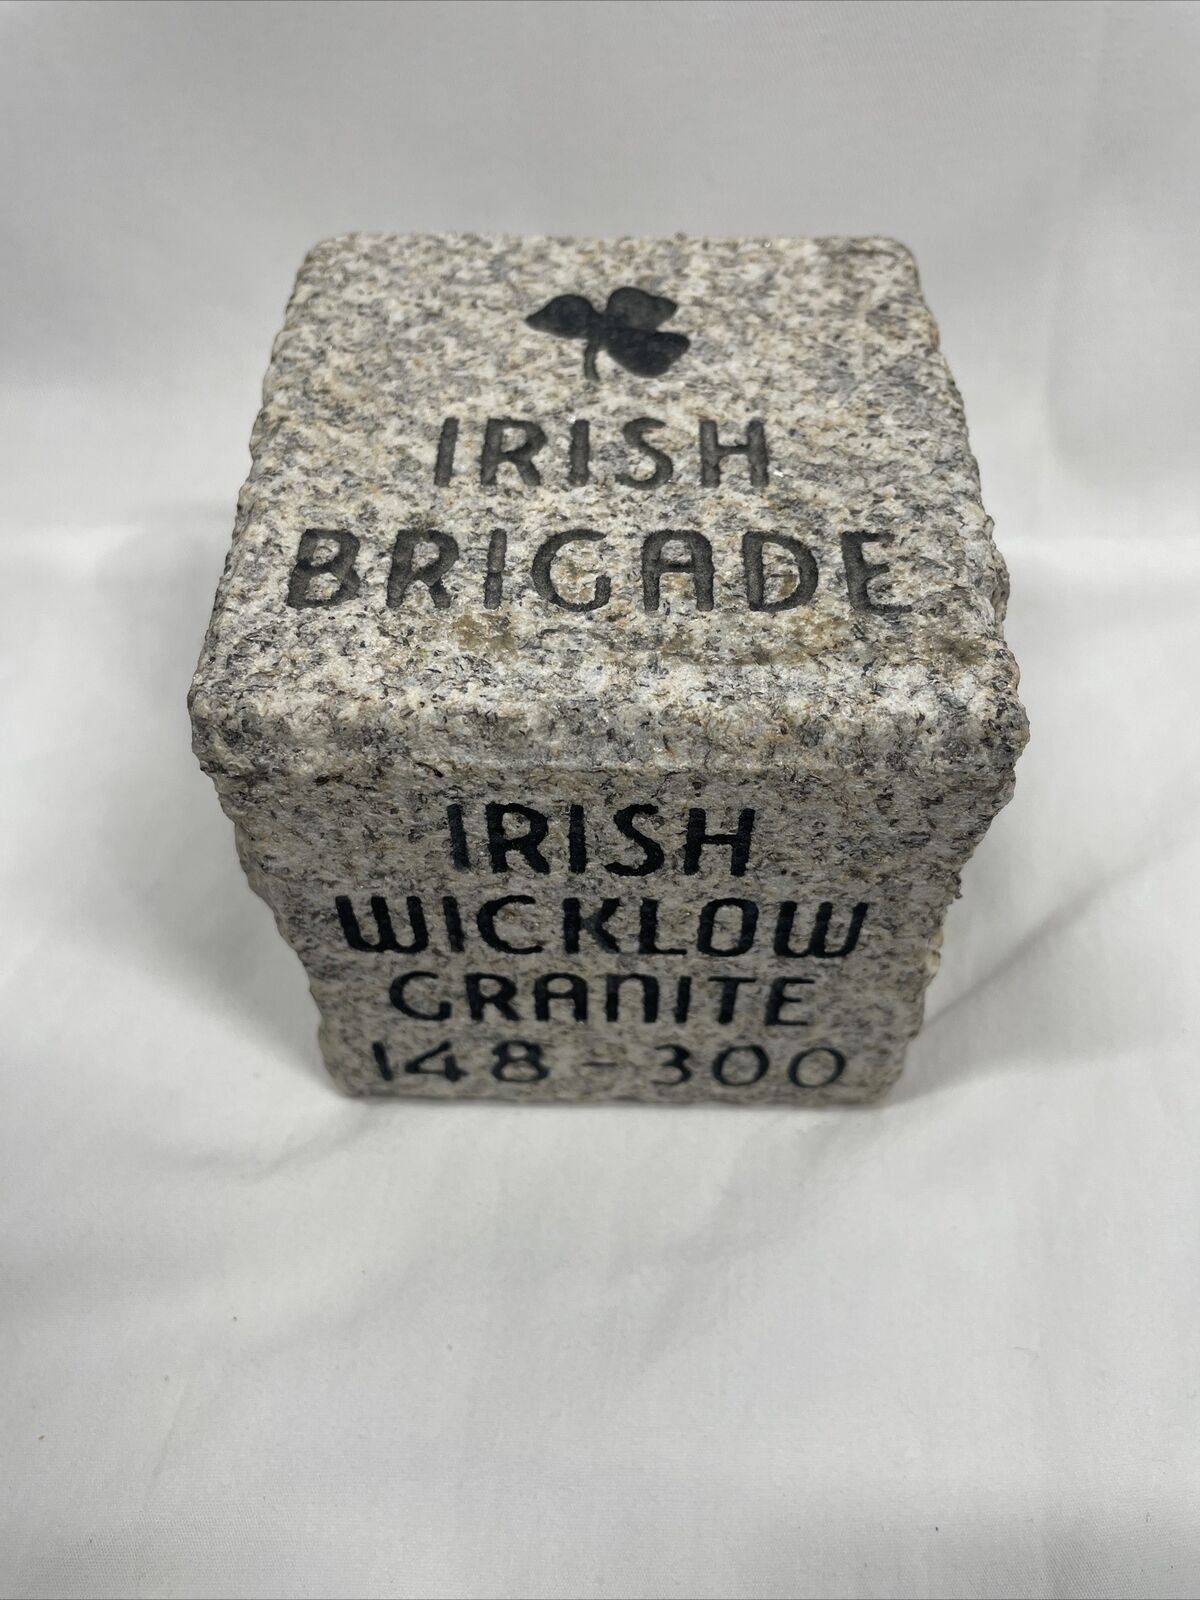 Irish Brigade Antietam Civil War Monument Commemorative Granite Block Rare